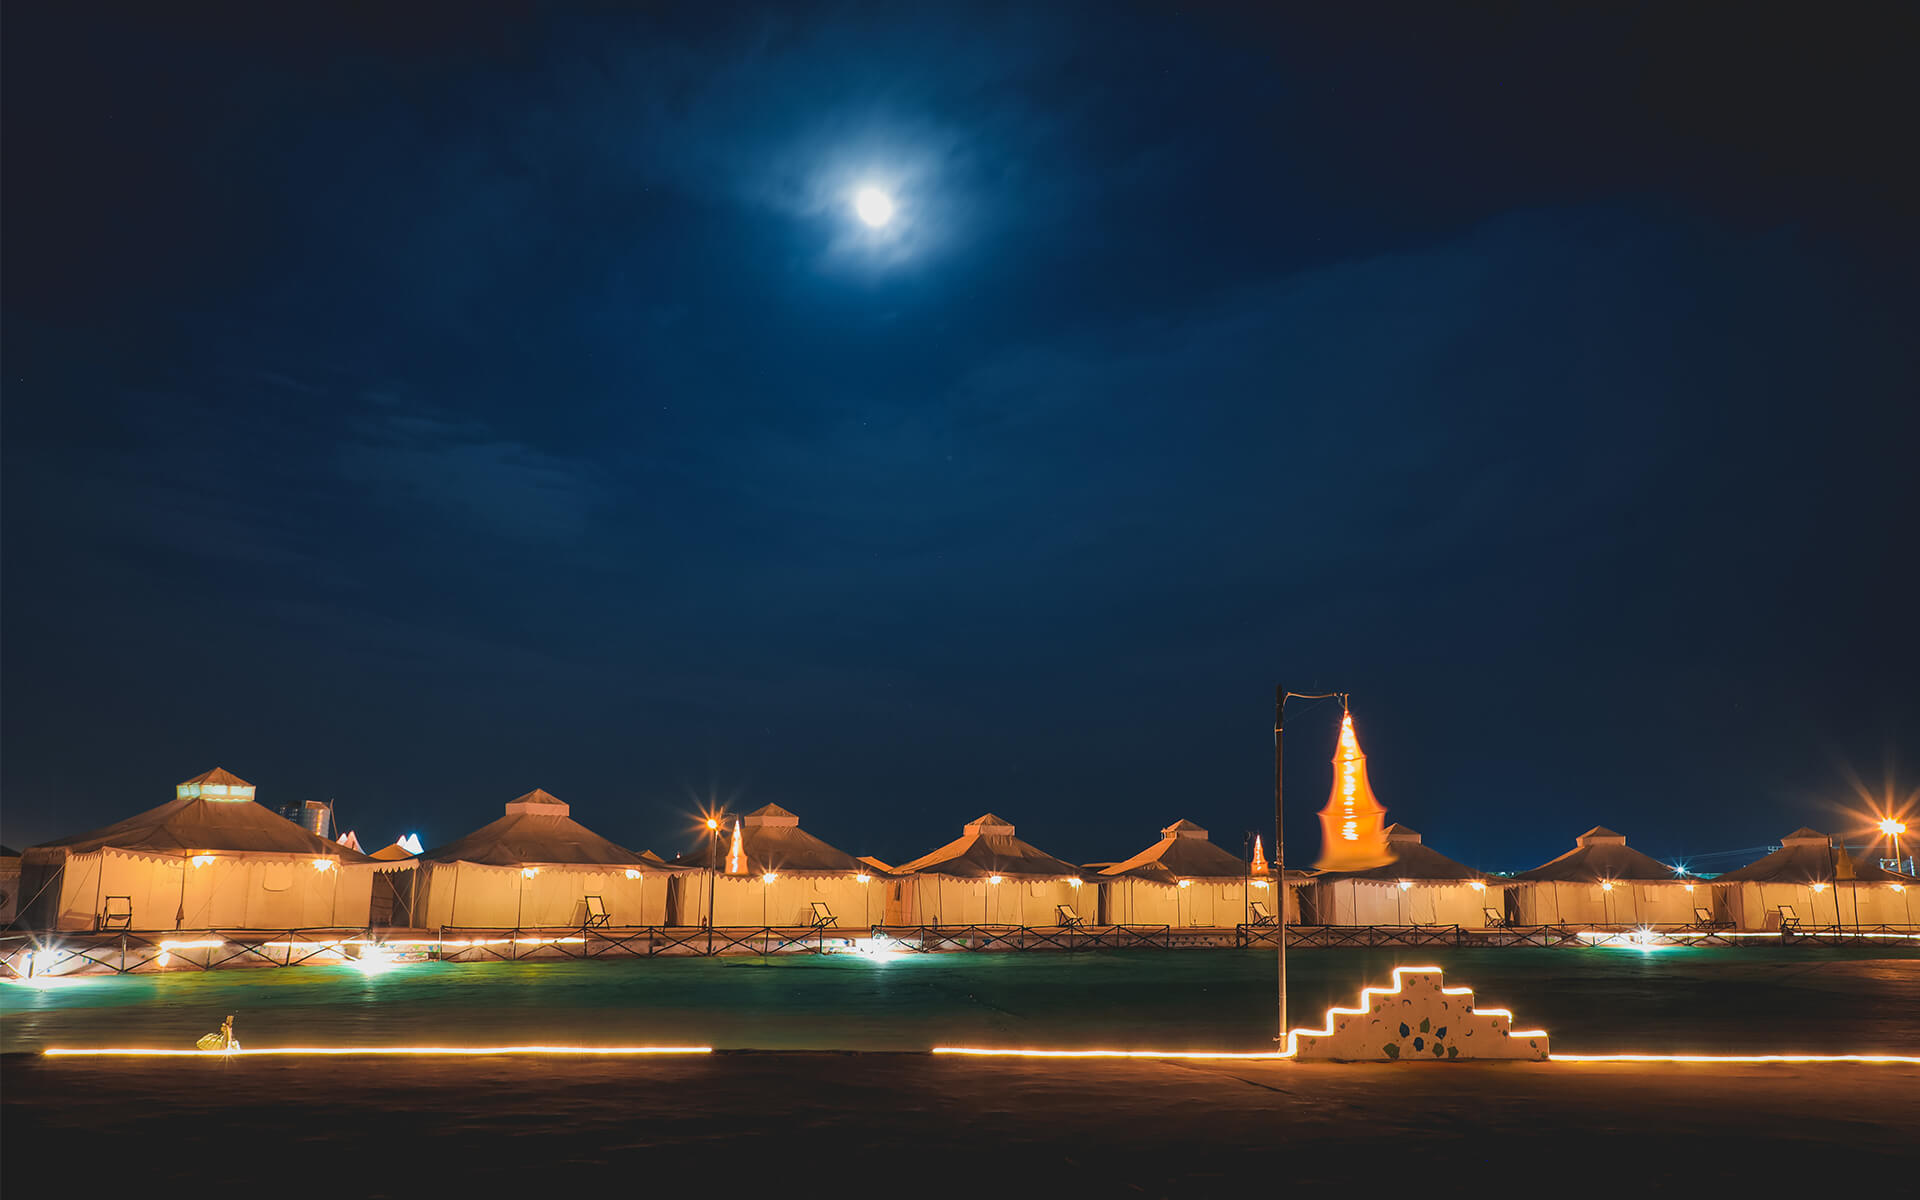 Experience Full Moon night at Rann Utsav Tent City